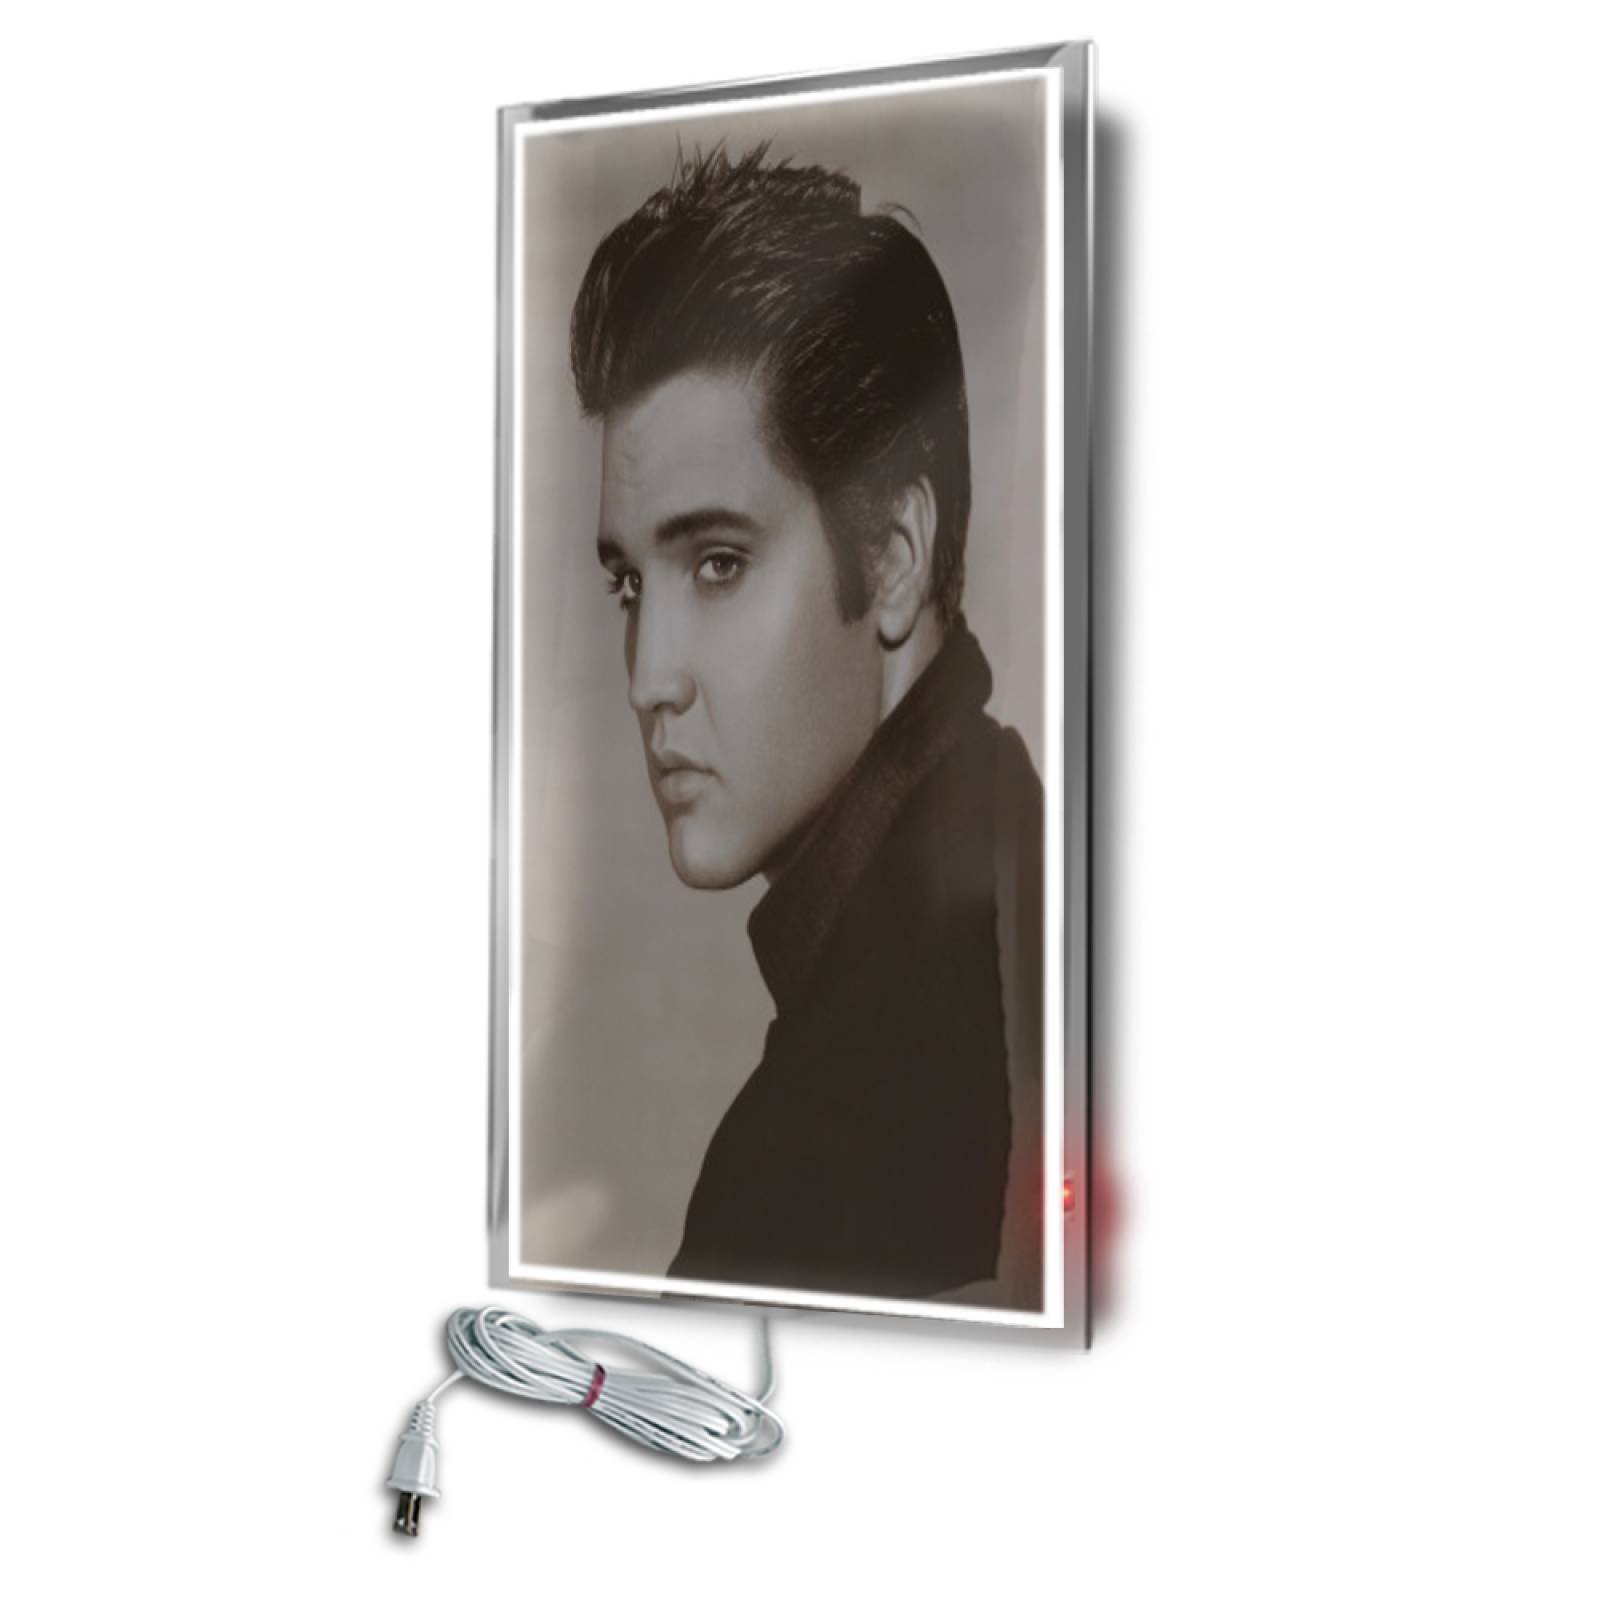 Calefactor de Panel infrarrojo en Cristal para Pared, California Wave Elvis Presley de 380W 60x90cm, Mod: 080CaSol